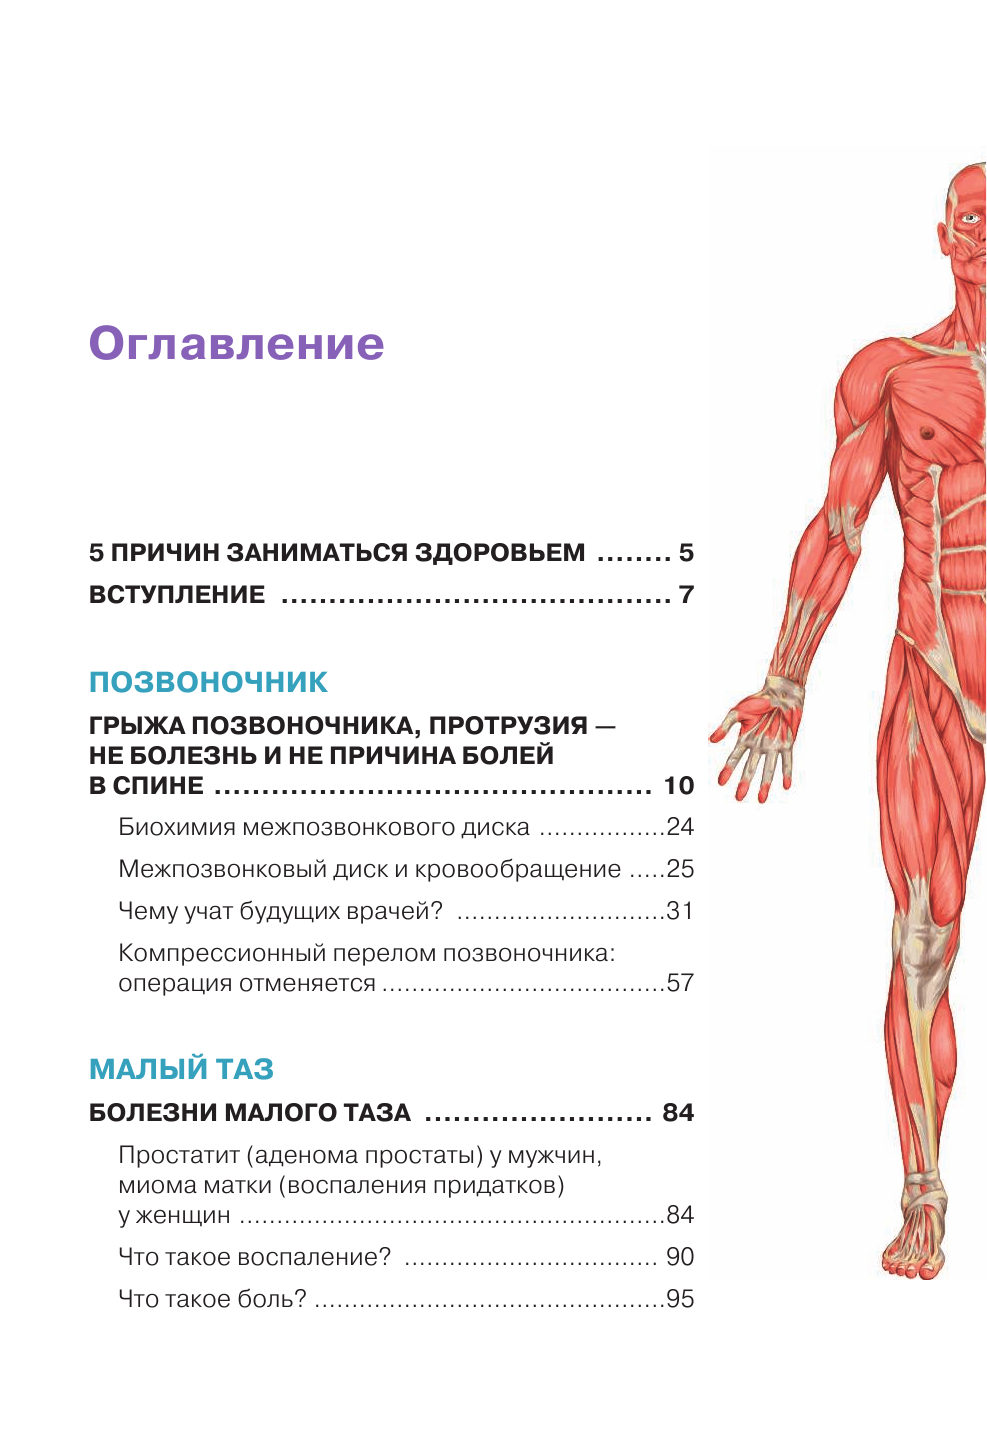 Функциональная анатомия здоровья - фото №3